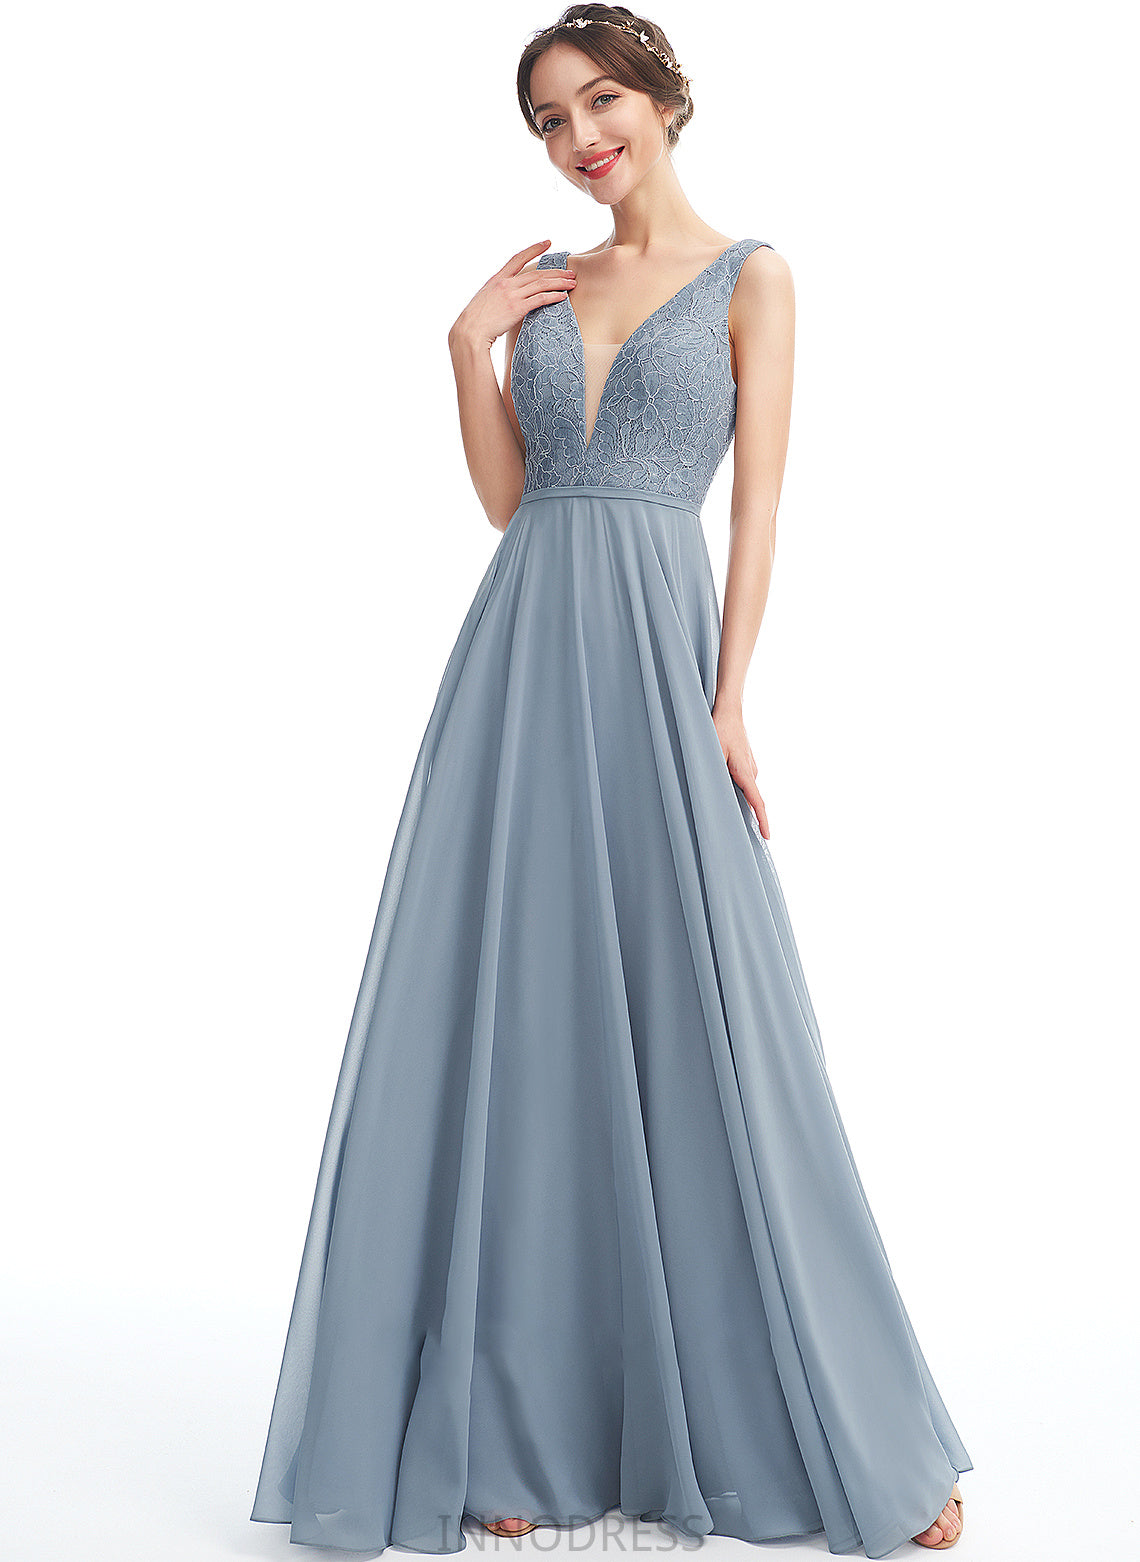 Silhouette A-Line V-neck Straps Length Fabric Floor-Length Lace Neckline Esmeralda Sleeveless A-Line/Princess